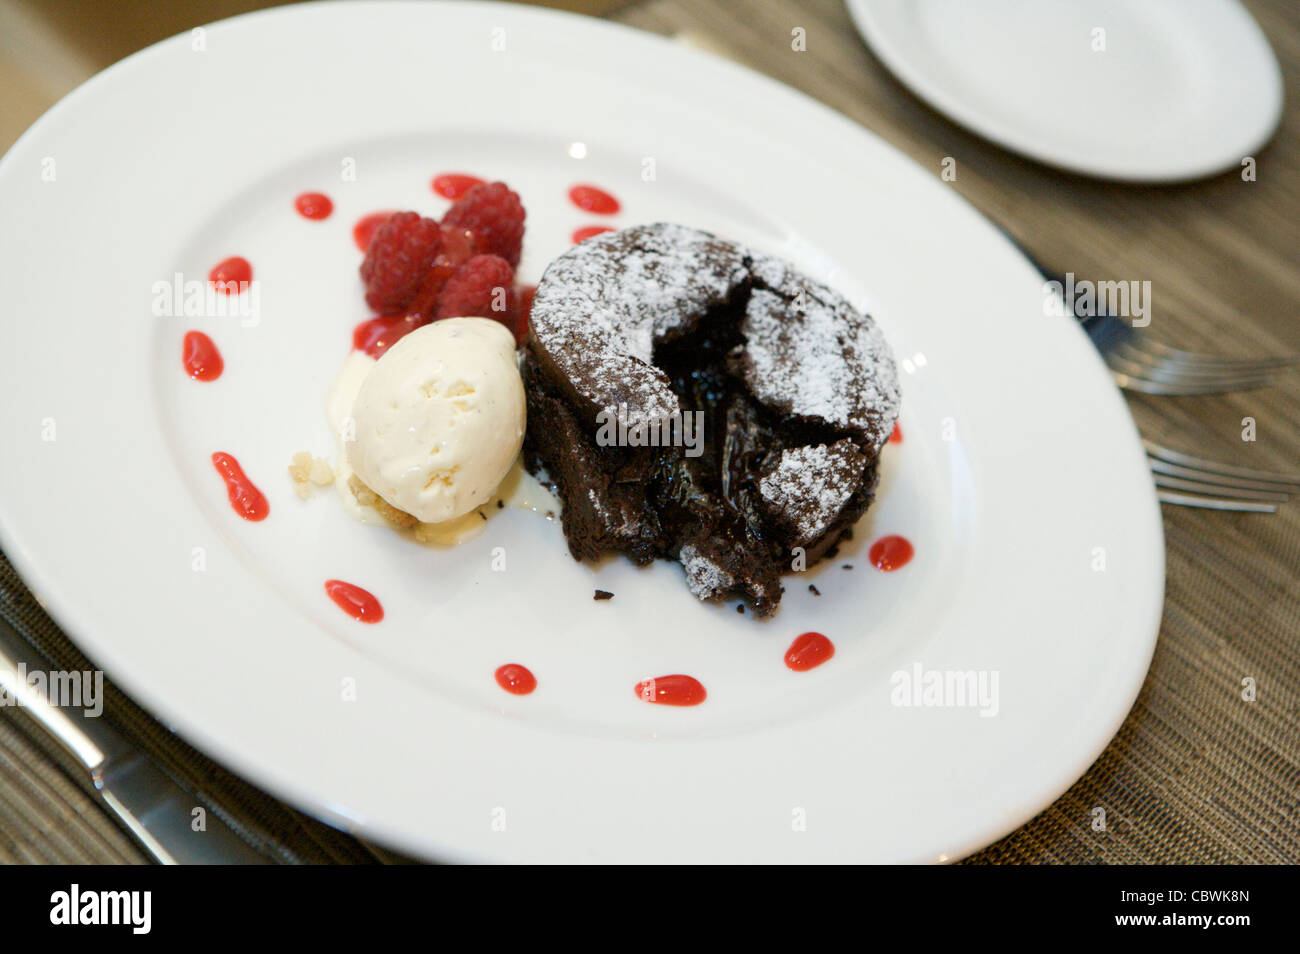 Dessert au chocolat, glace vanille et coulis de framboise Banque D'Images